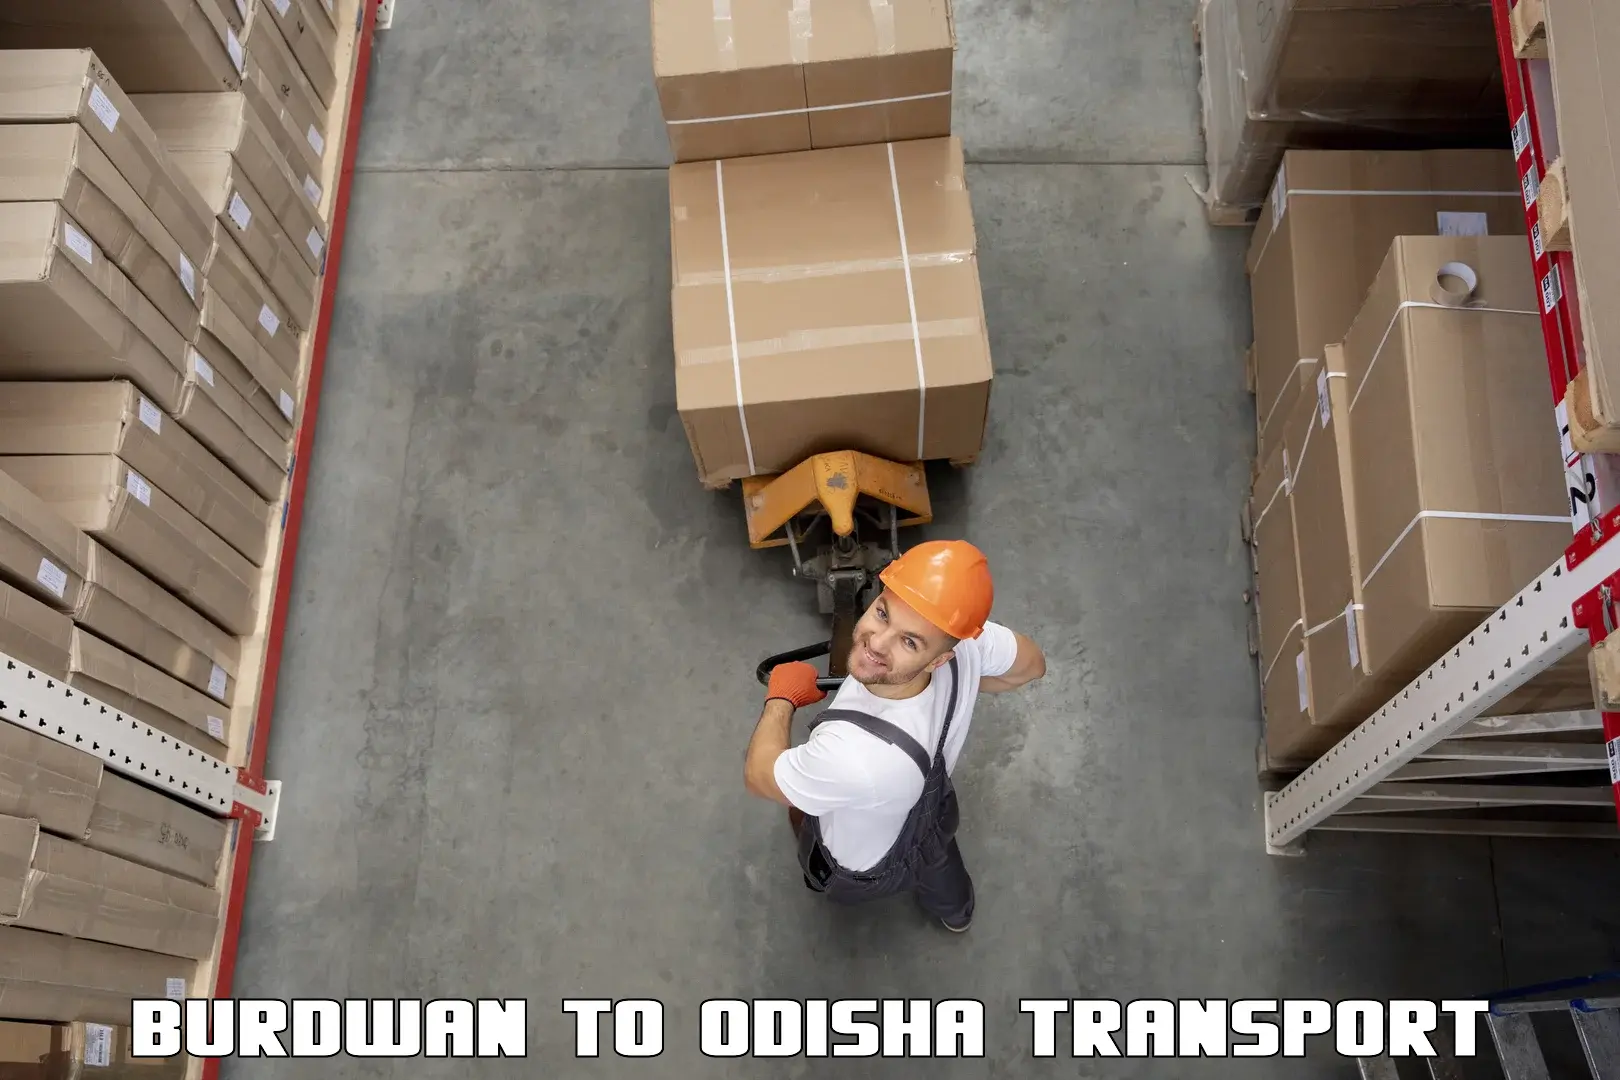 Truck transport companies in India in Burdwan to Duburi